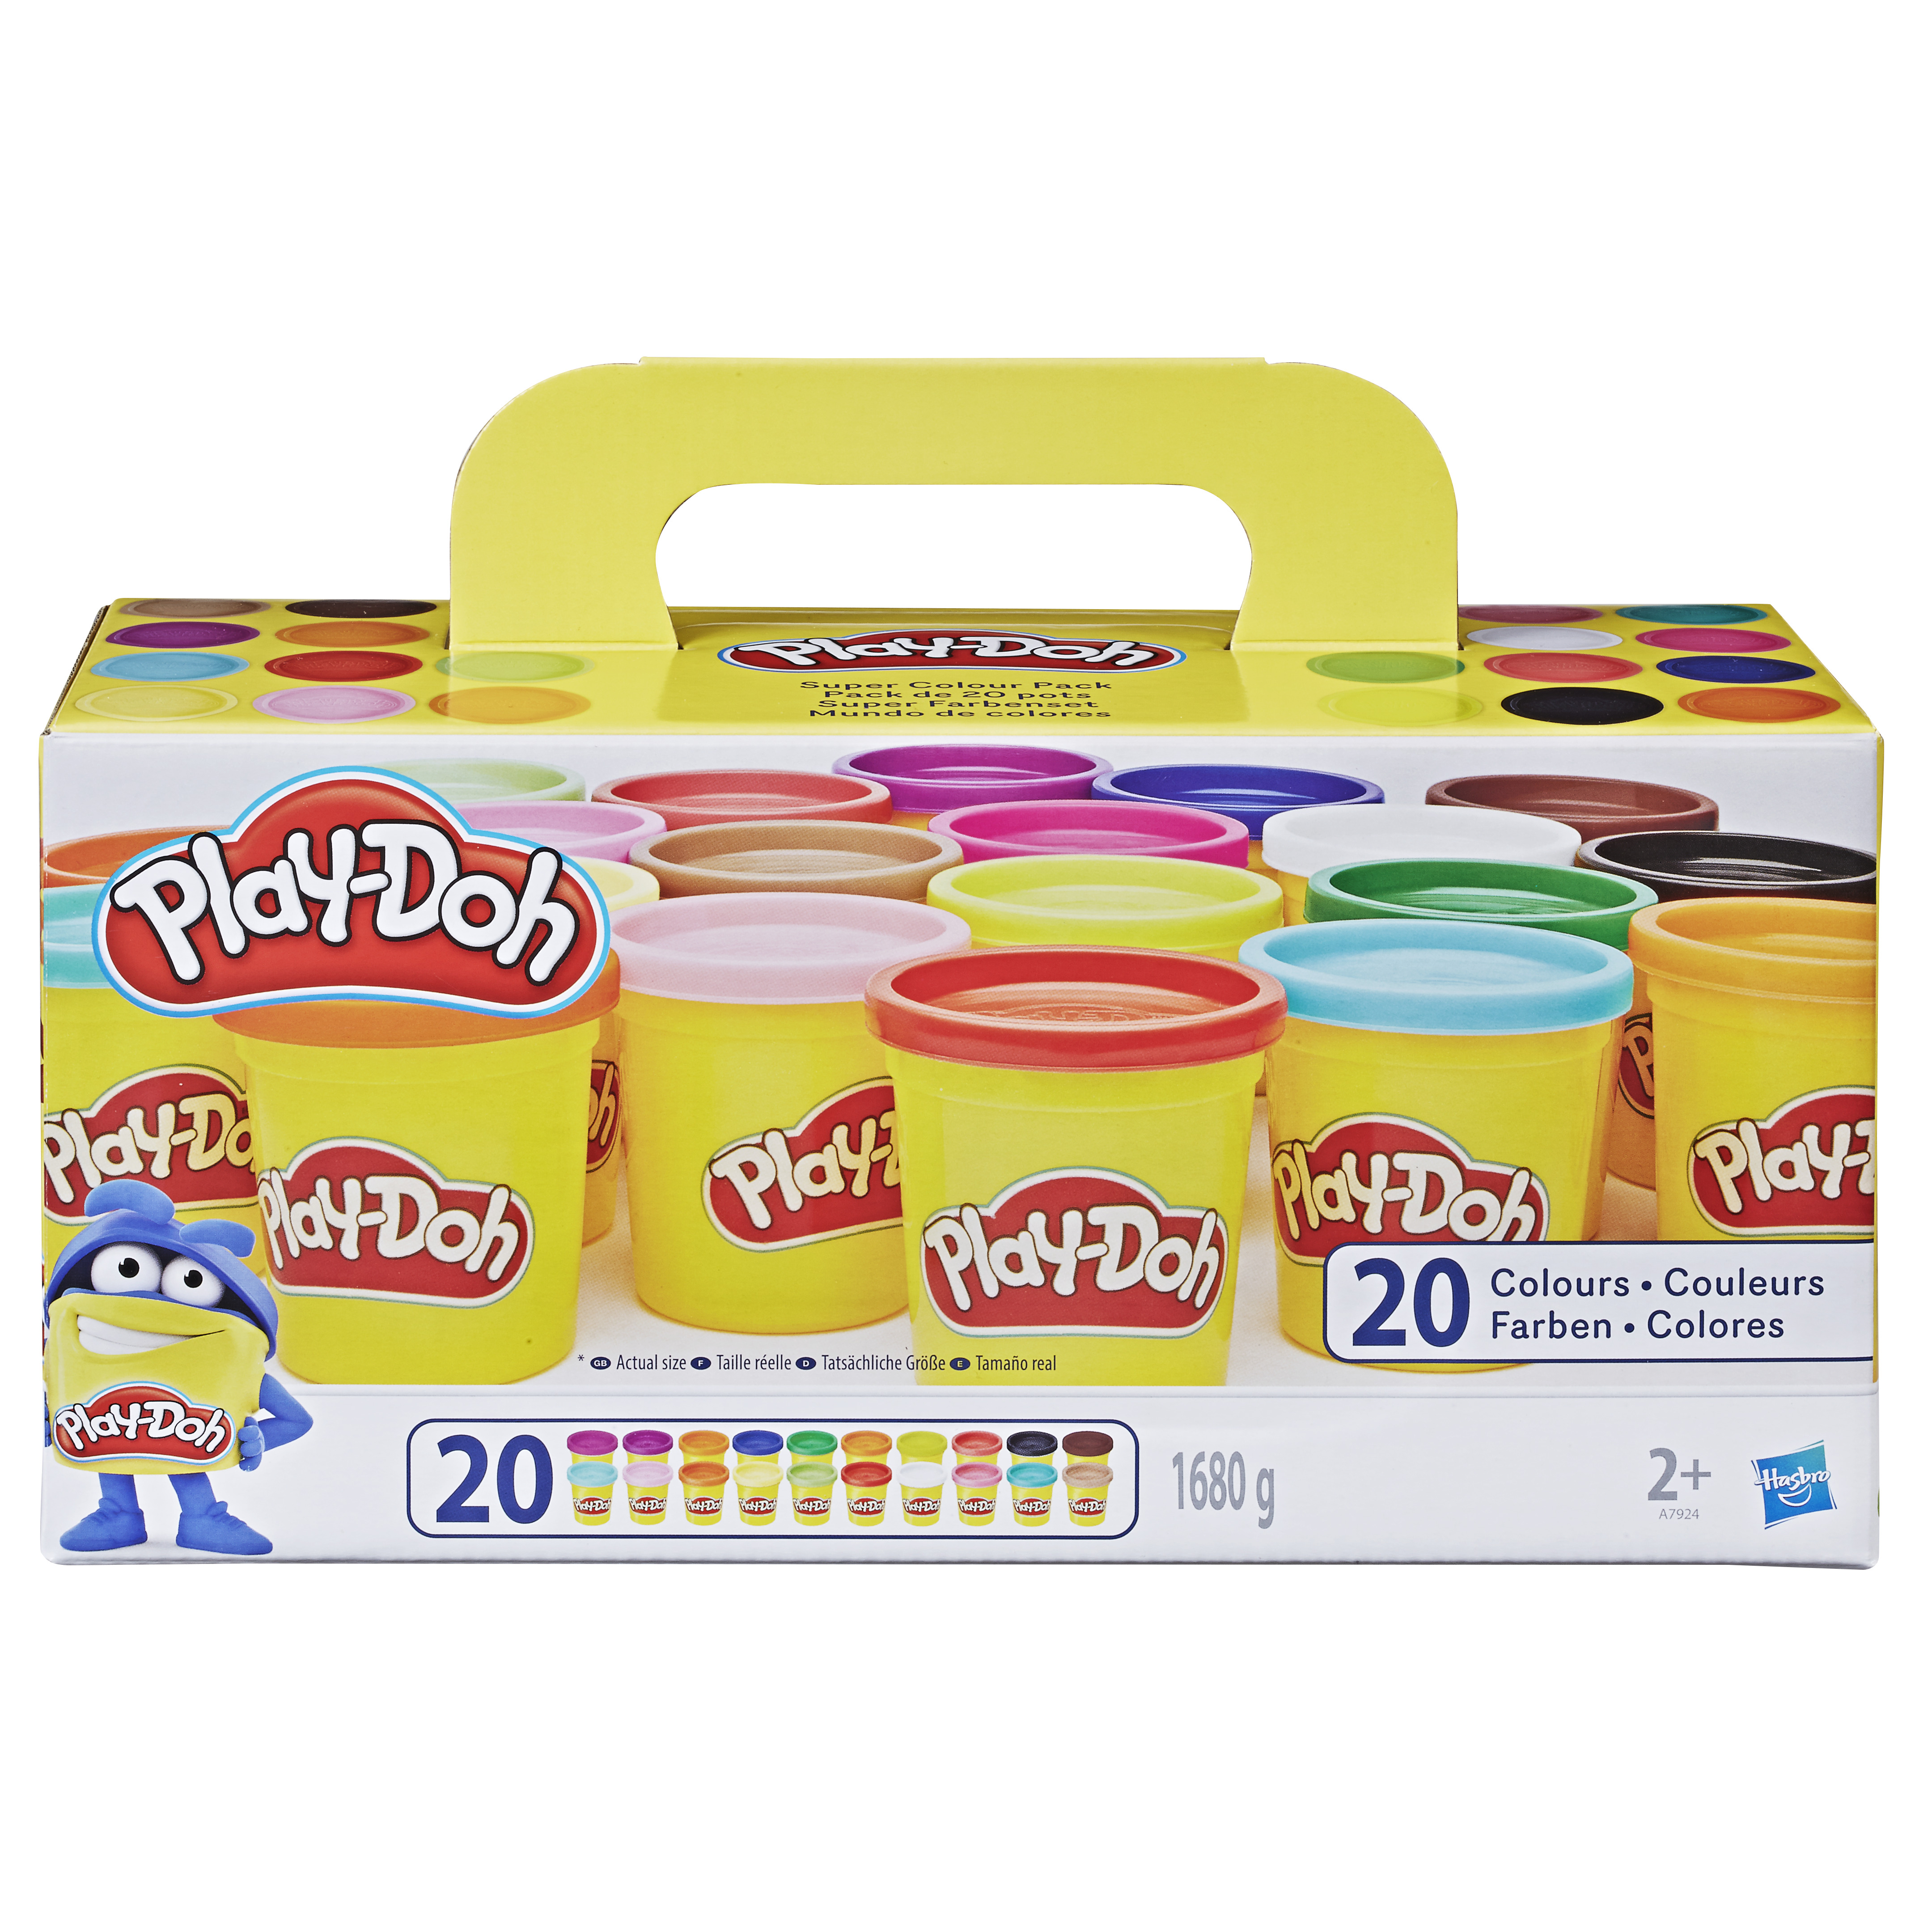 Play-Doh - Kit de construction - Avec 5 pots de pâte à modeler